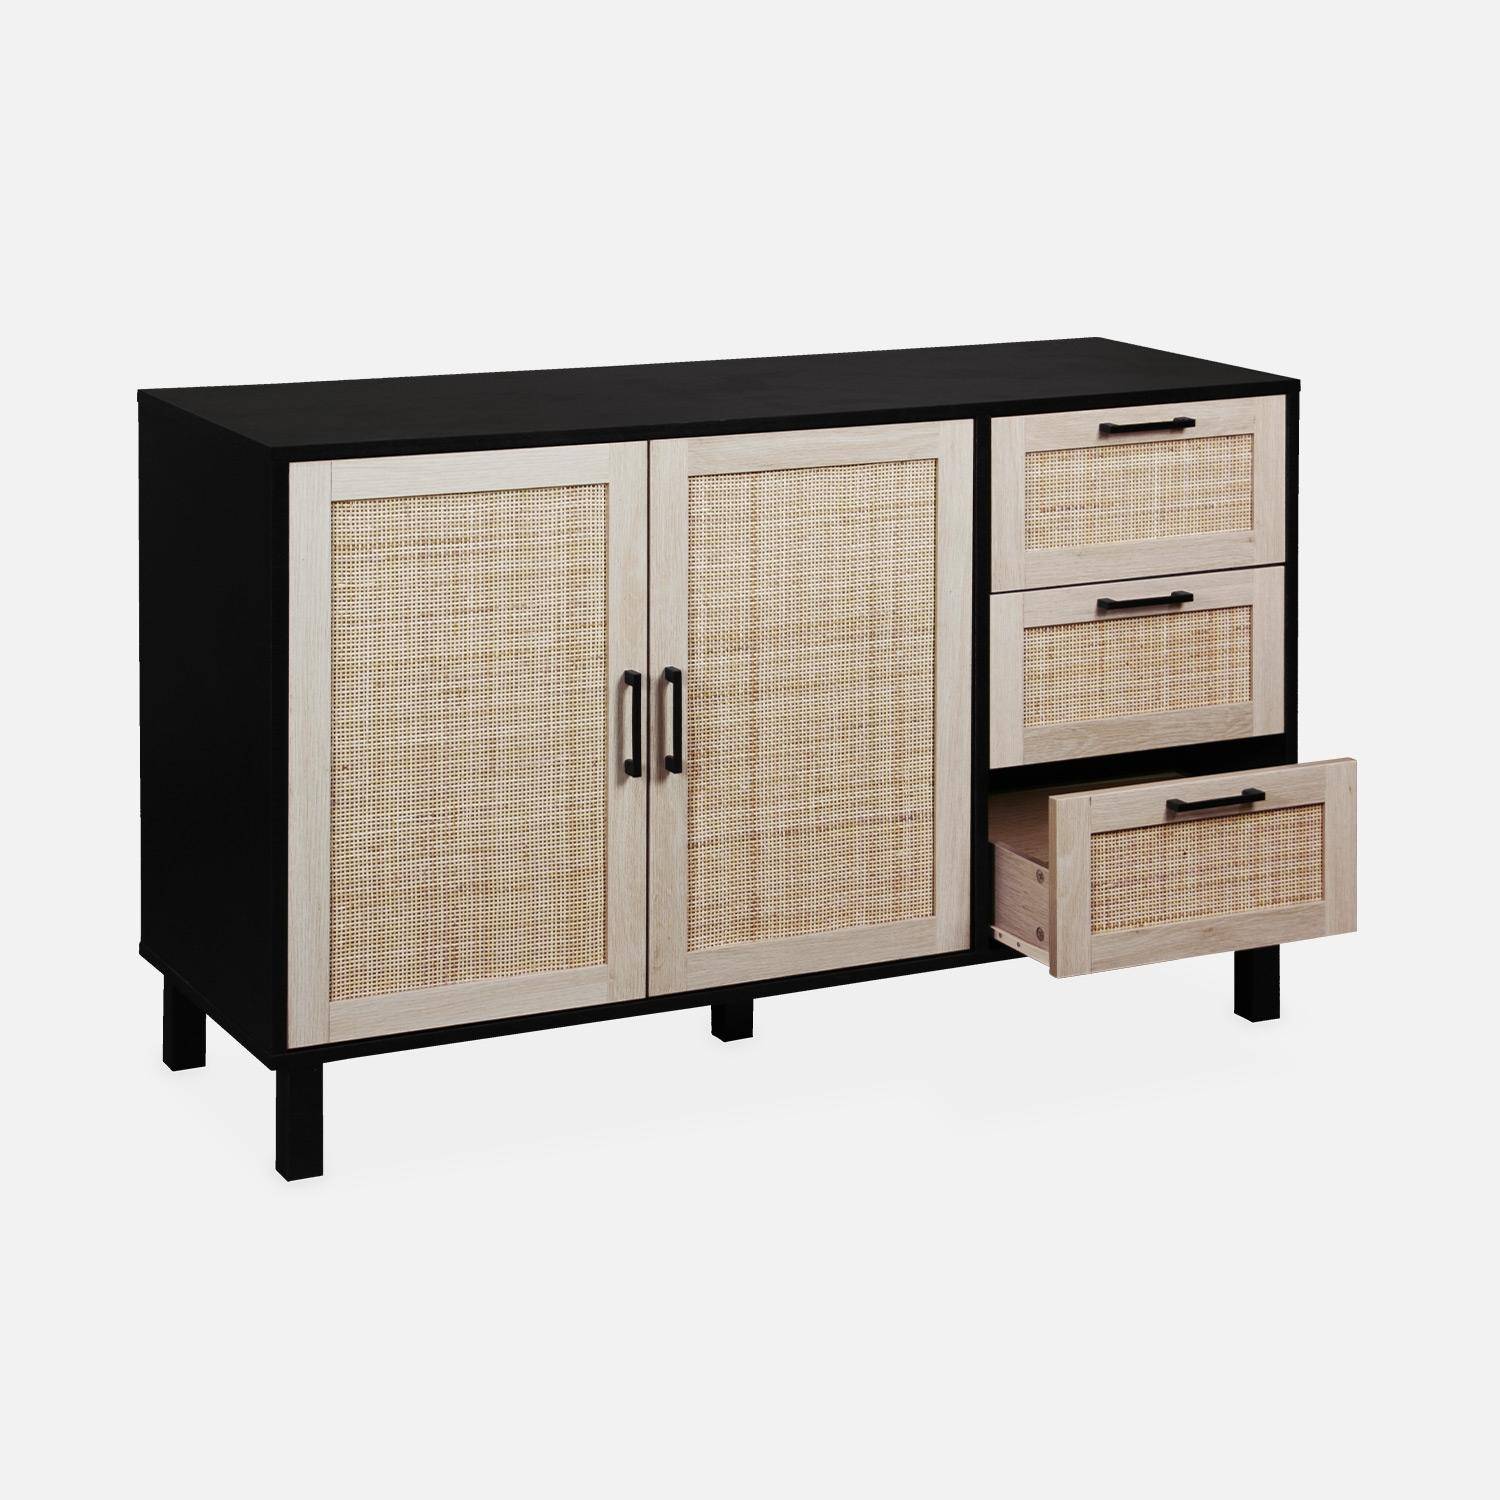 Black and cane sideboard 120 x 40 x 75cm - Bianca - 3 drawers, 2 doors, 2 levels, 1 shelf,sweeek,Photo5